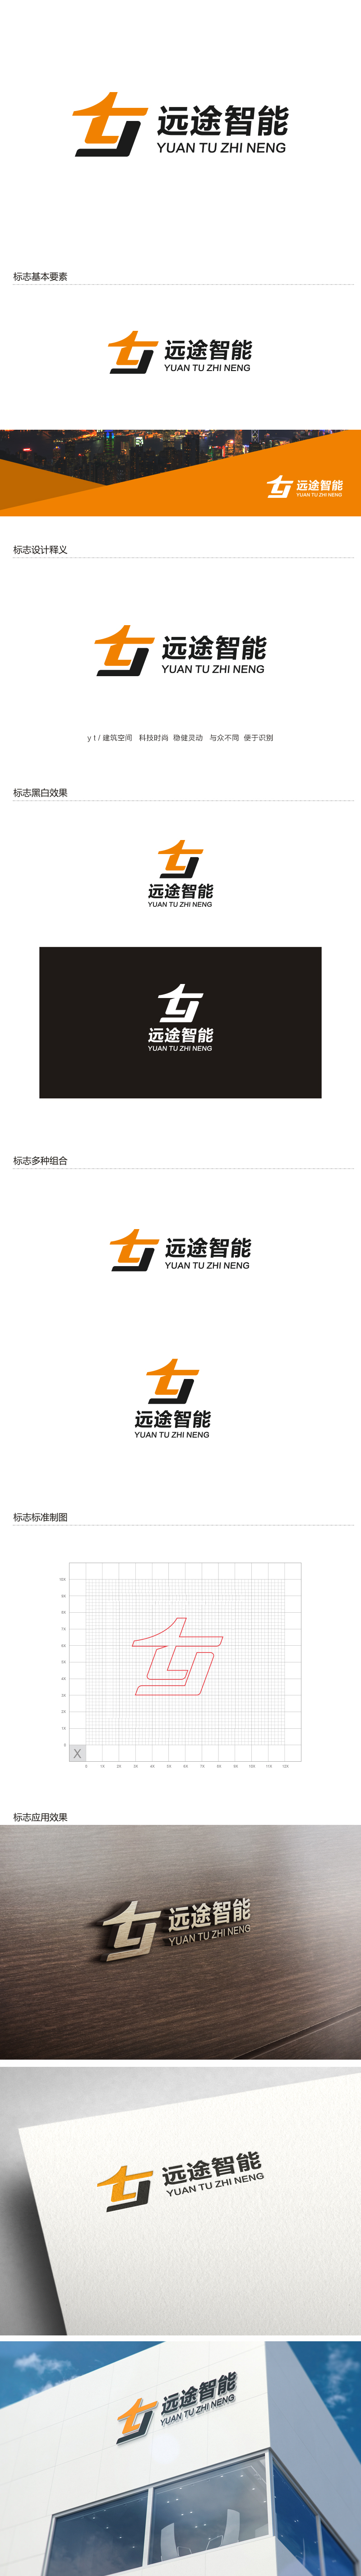 杨勇的江苏远途智能装配房有限公司logo设计